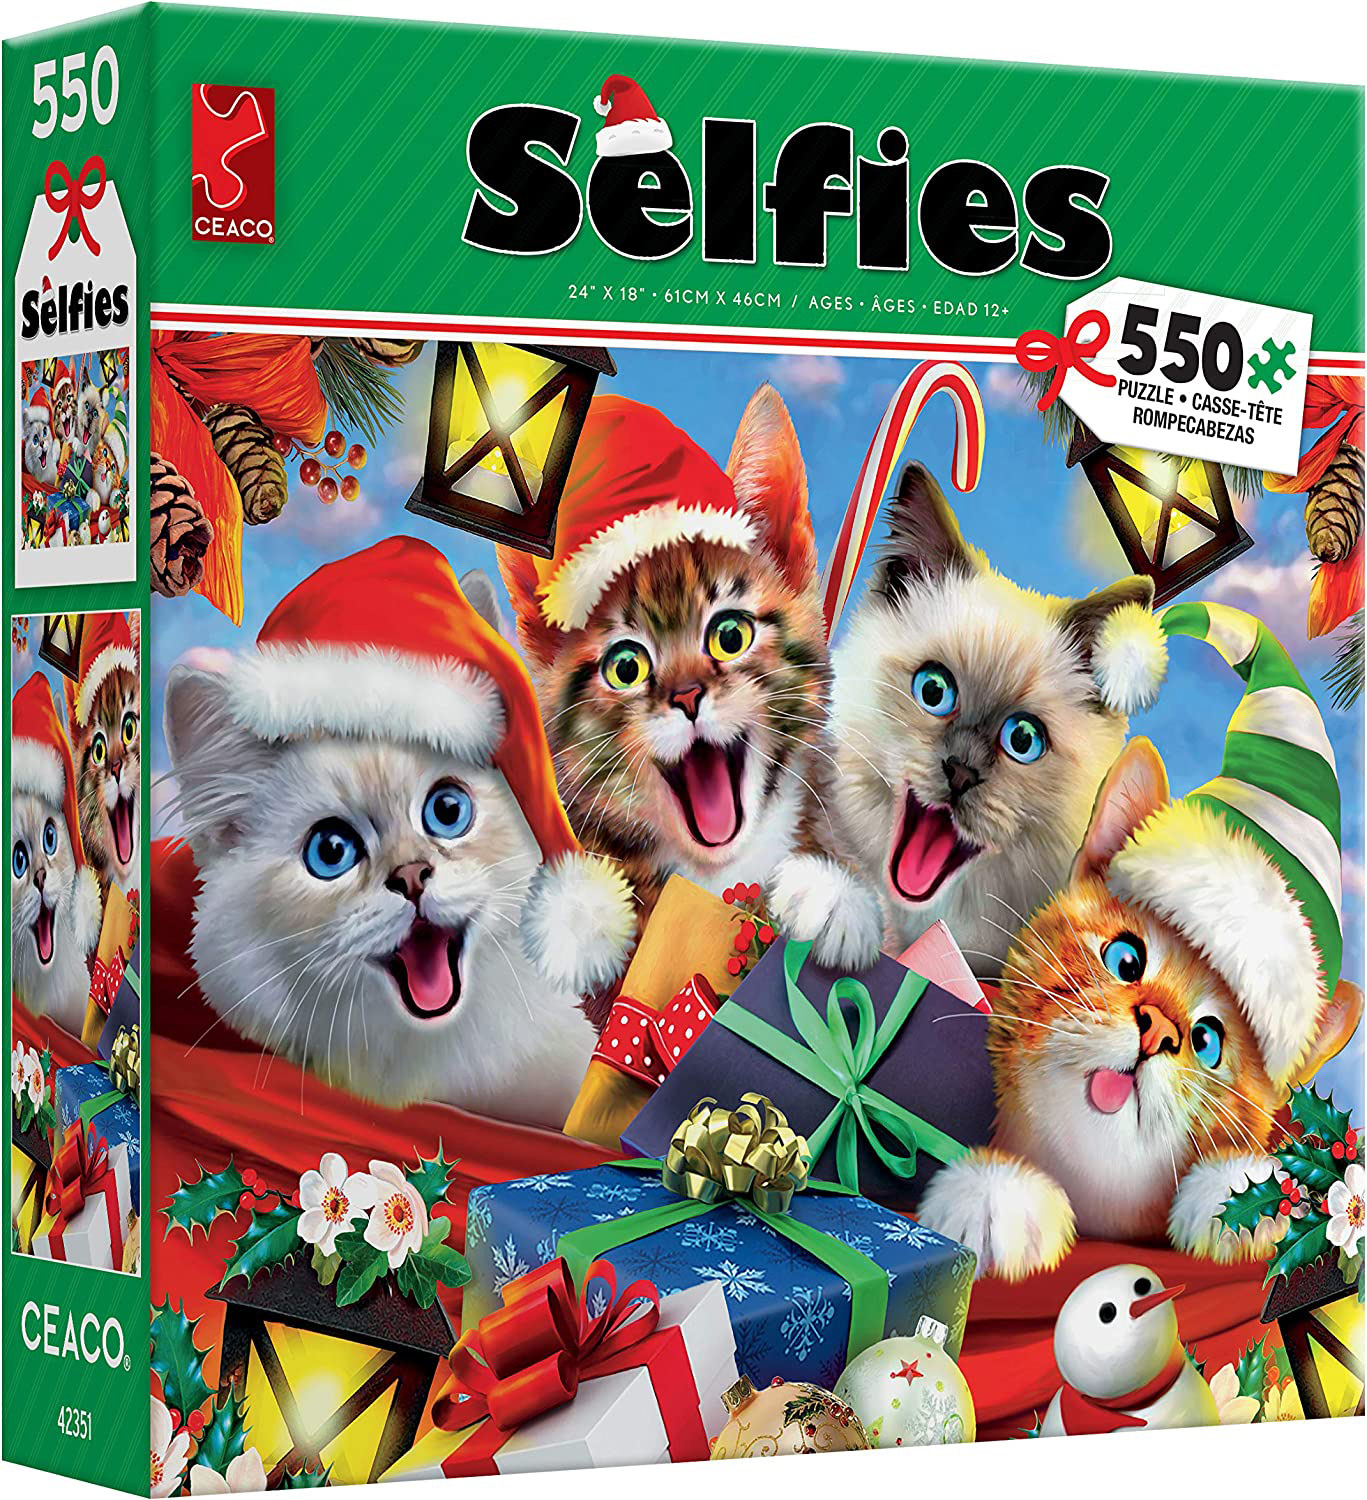 Selfies Cats